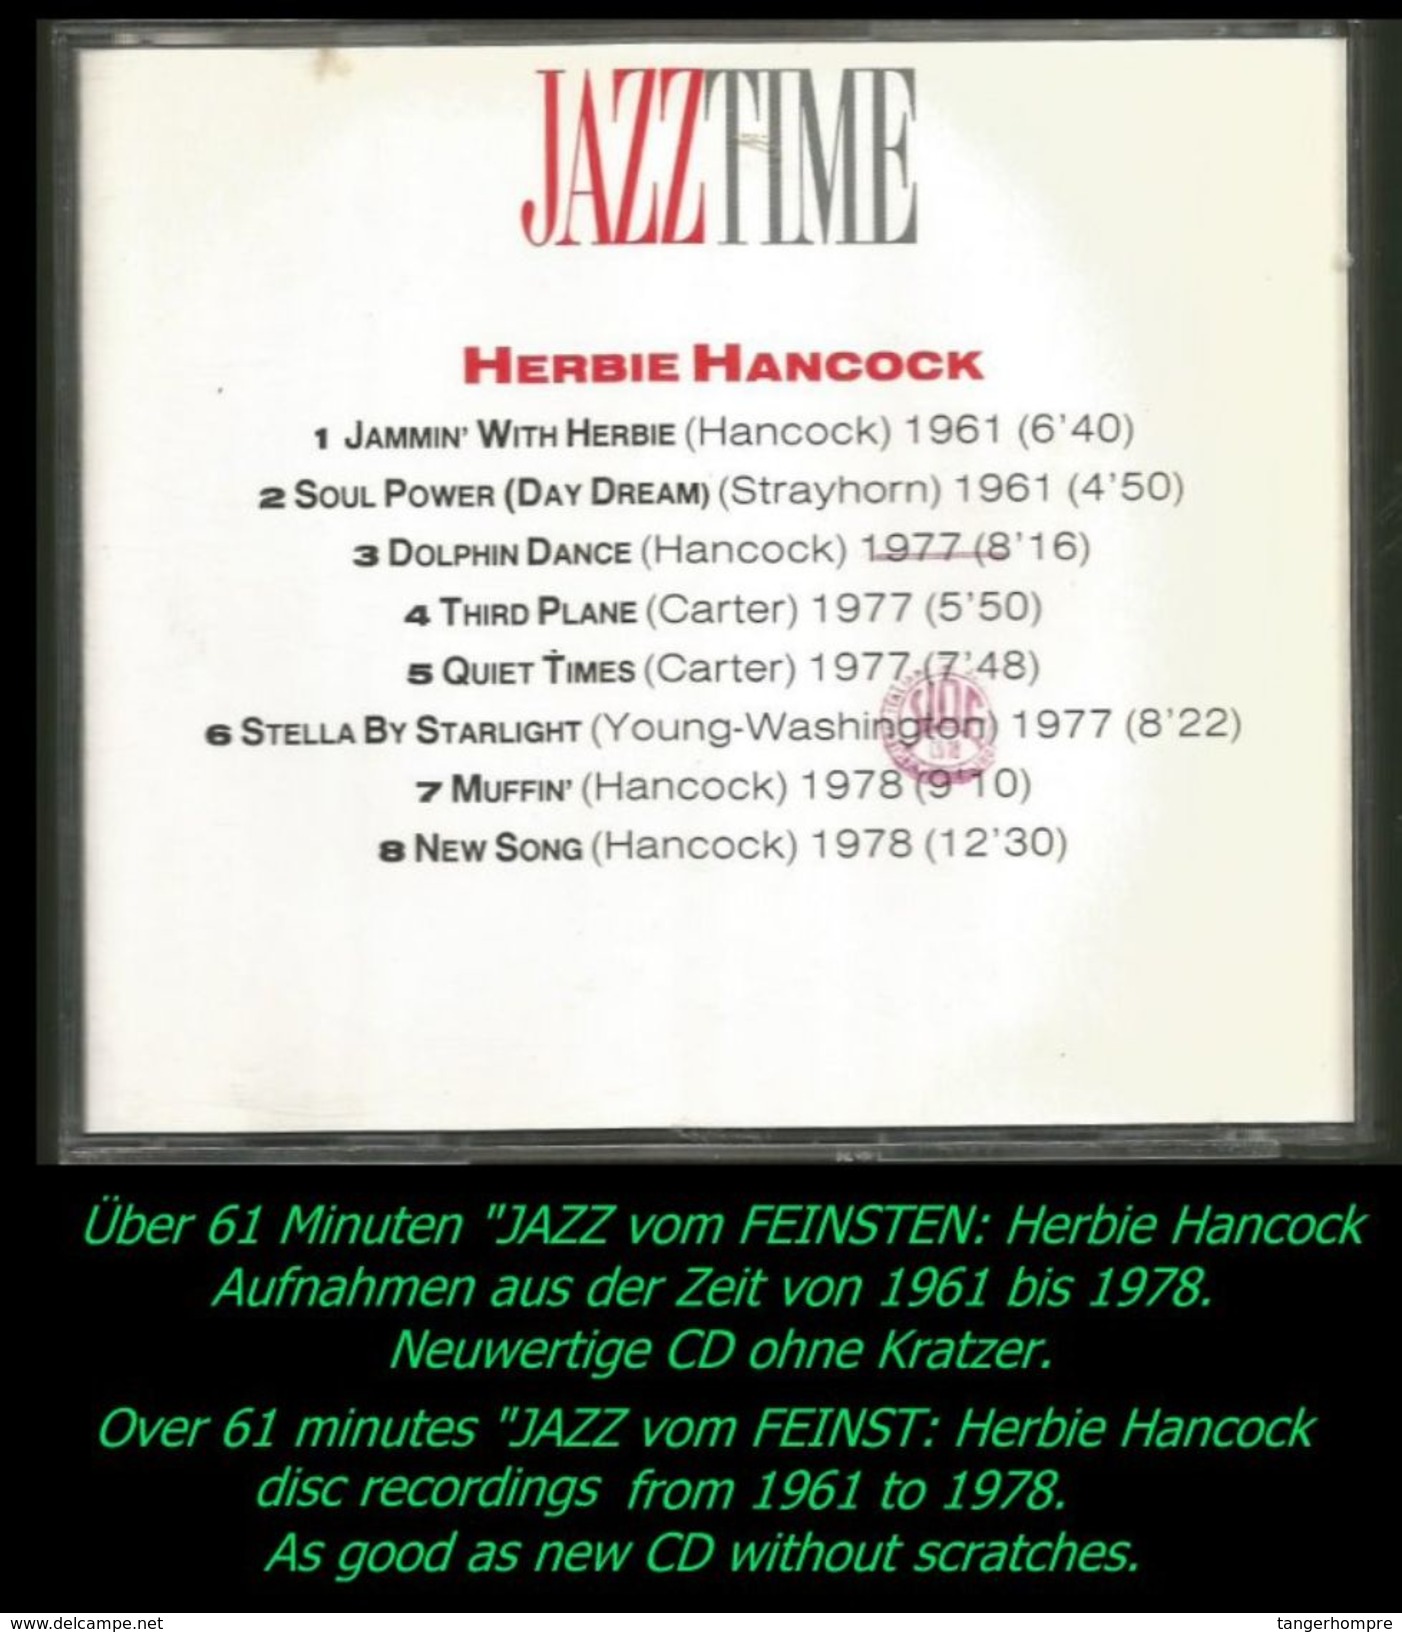 über 60 Minuten Jazz Von Herrbie Hancock Von 1961 - 78 - Jazz Of Finest From 1961 - 78 - Jazz